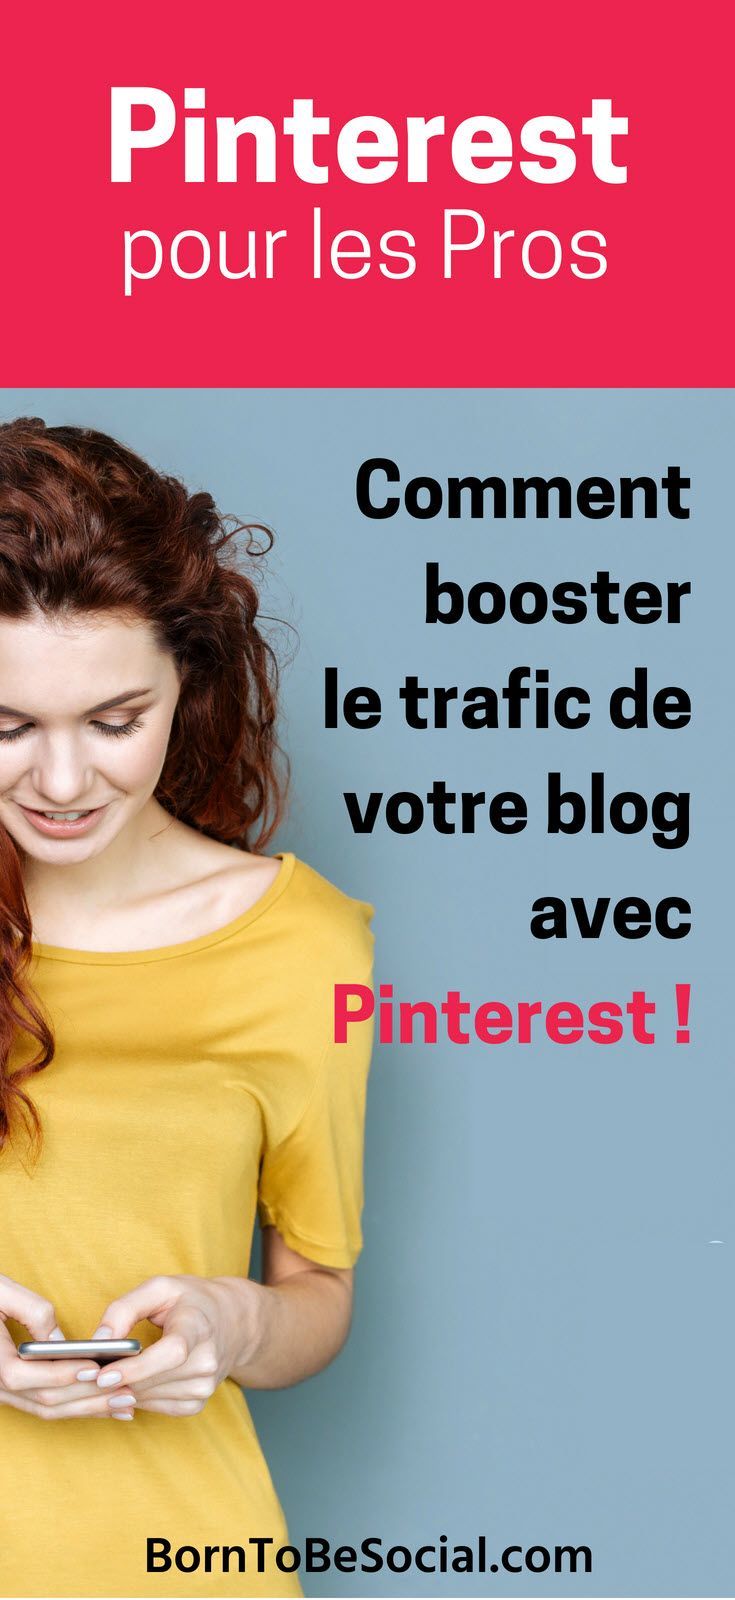 Voici comment augmenter le trafic de son blog avec Pinterest – Augmentez le nombre de visiteurs de votre #blog et boostez sa visibilité, grâce à Pinterest #webmarketing | Mary Lumley | Expert #Pinterest | #BornToBeSocial - Pinterest pour les Professionnels